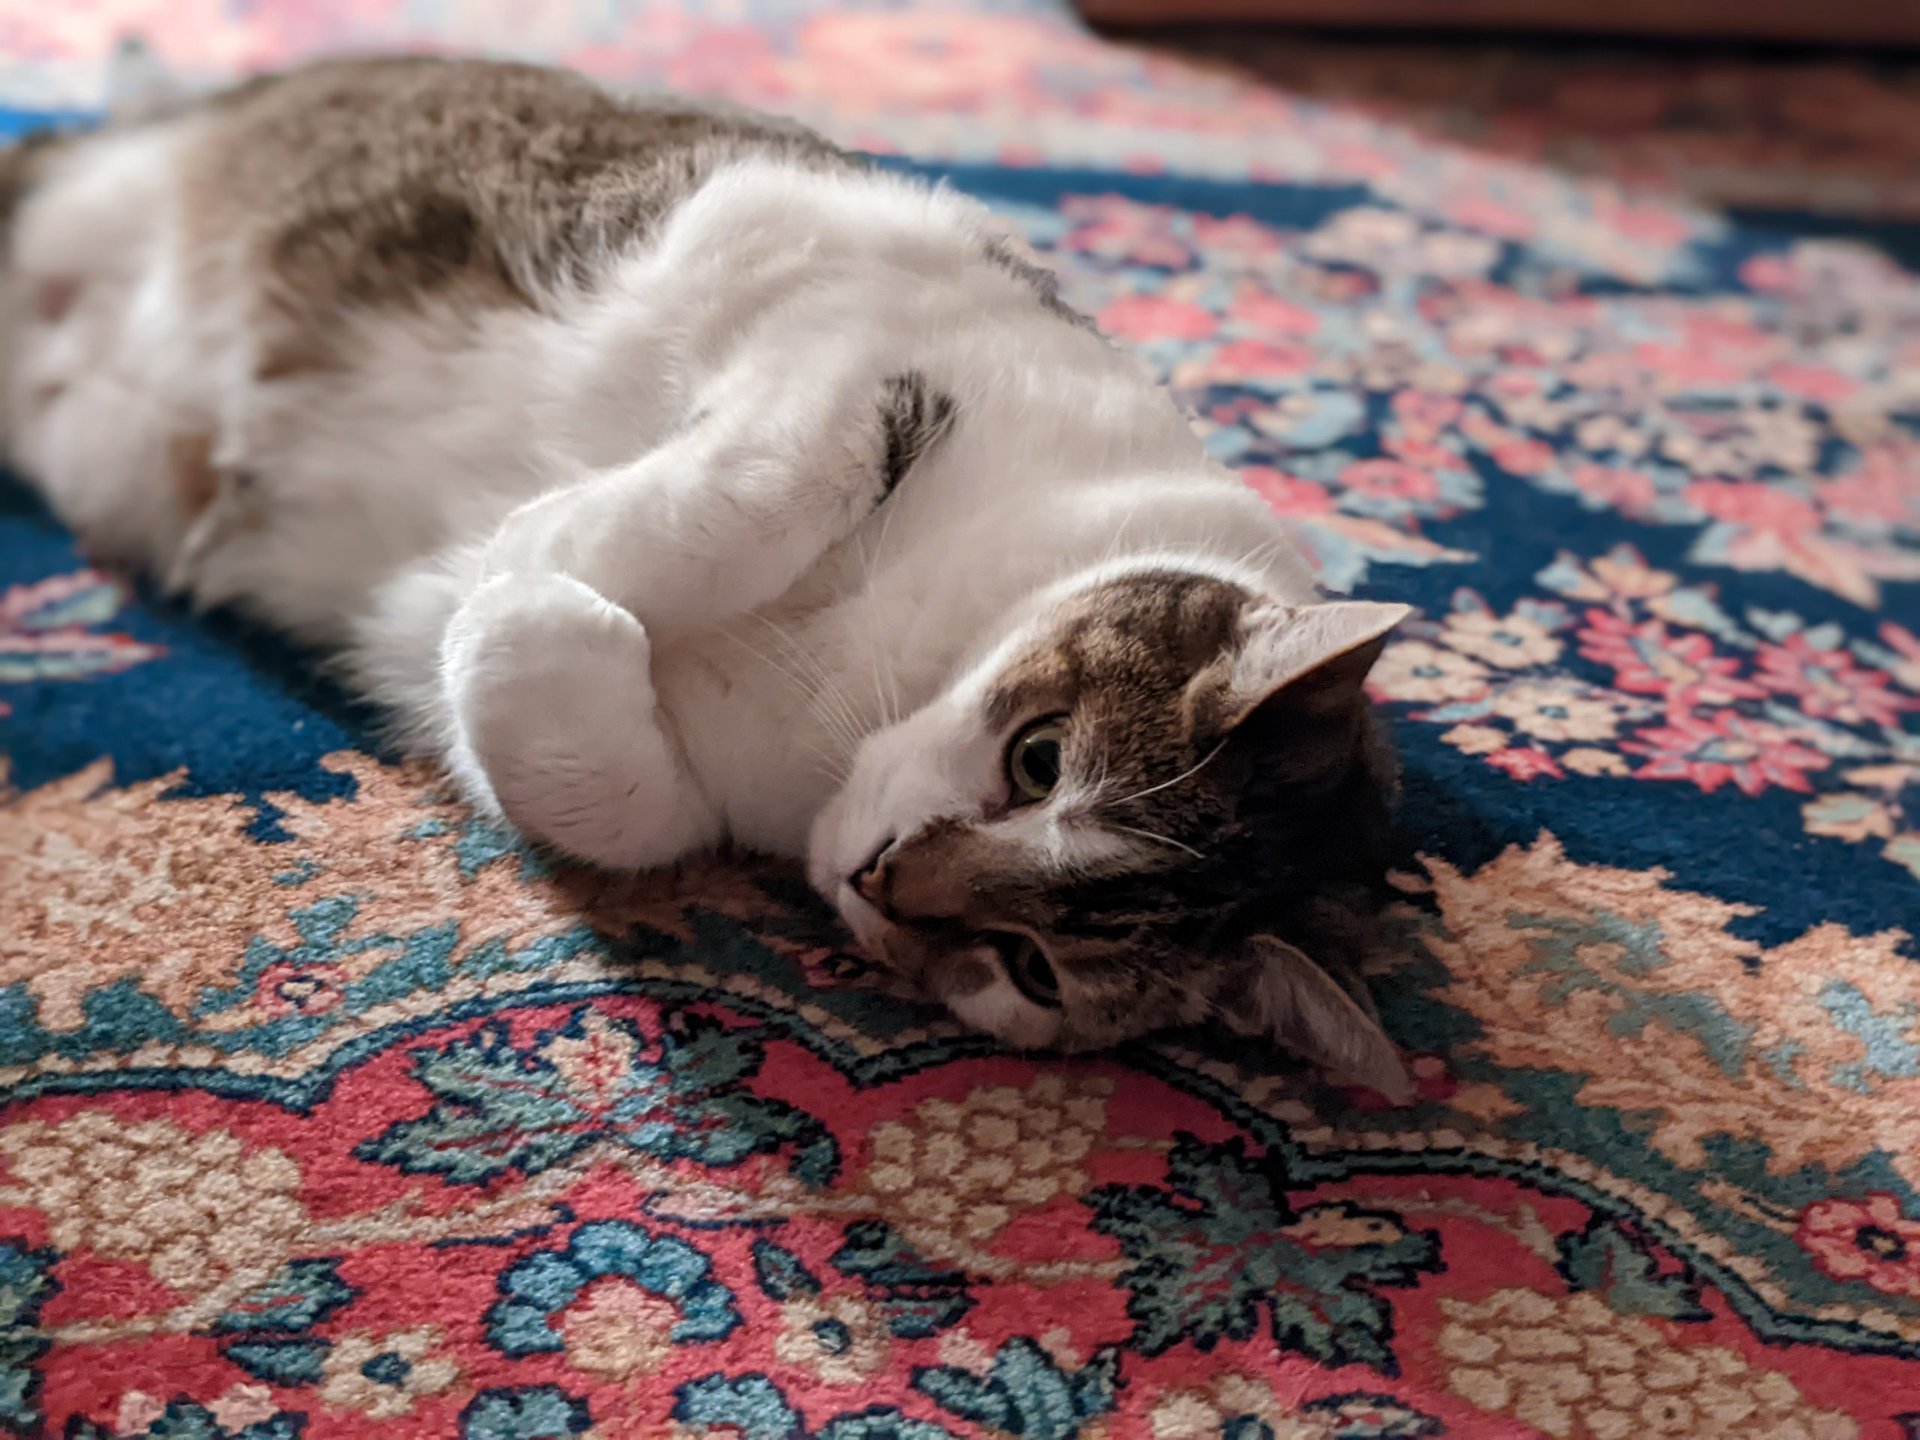 Pixel 6a low light portrait mode cat